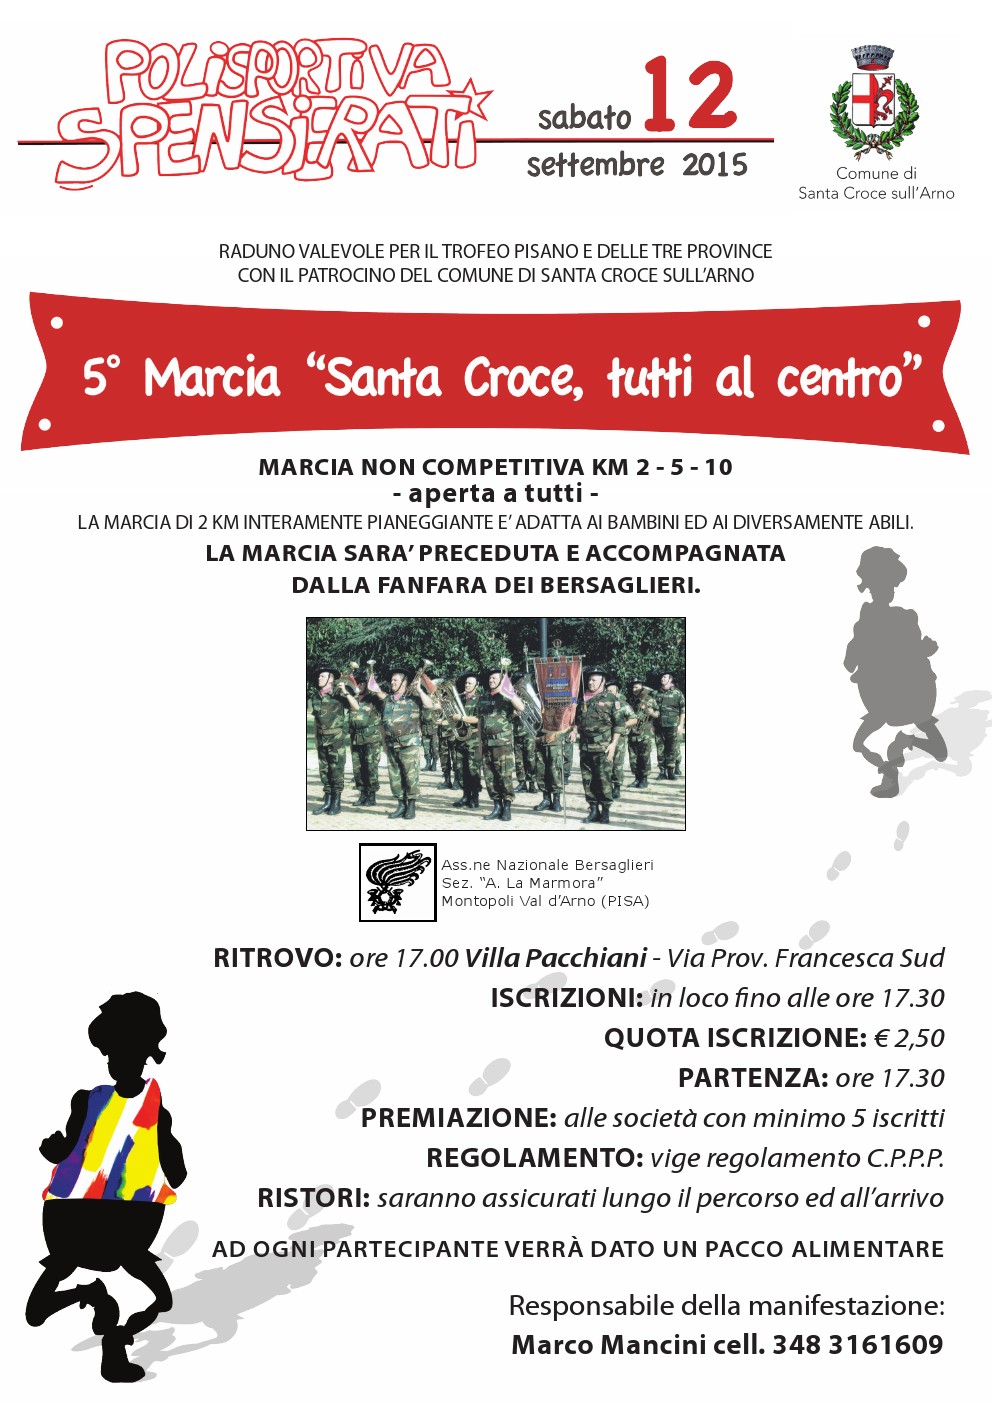 48° marcia – Sabato 12/09 Santa Croce sull’Arno (PI) – Villa Pacchiani – Via Prov. Francesca Sud 5° MARCIA “SANTA CROCE IN PIAZZA”